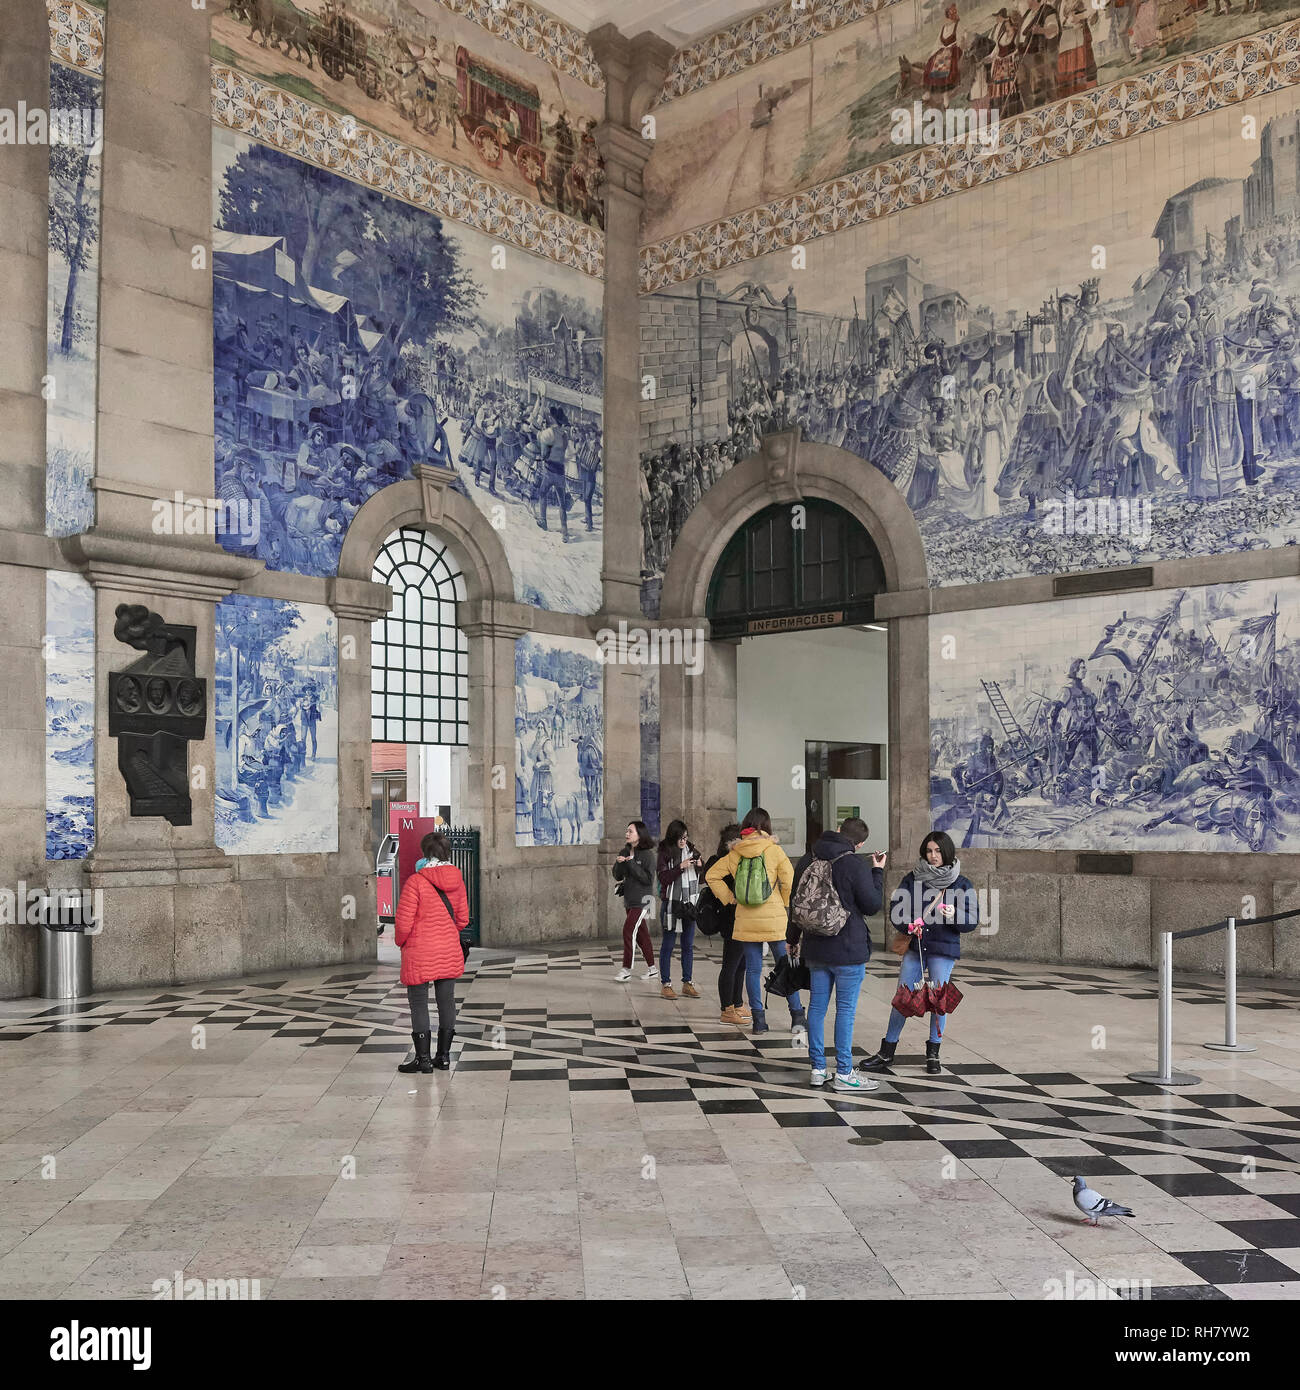 Hall de la gare de San Bento décorée de carreaux bleus, un compte de l'histoire du Portugal dans la ville de Porto Banque D'Images